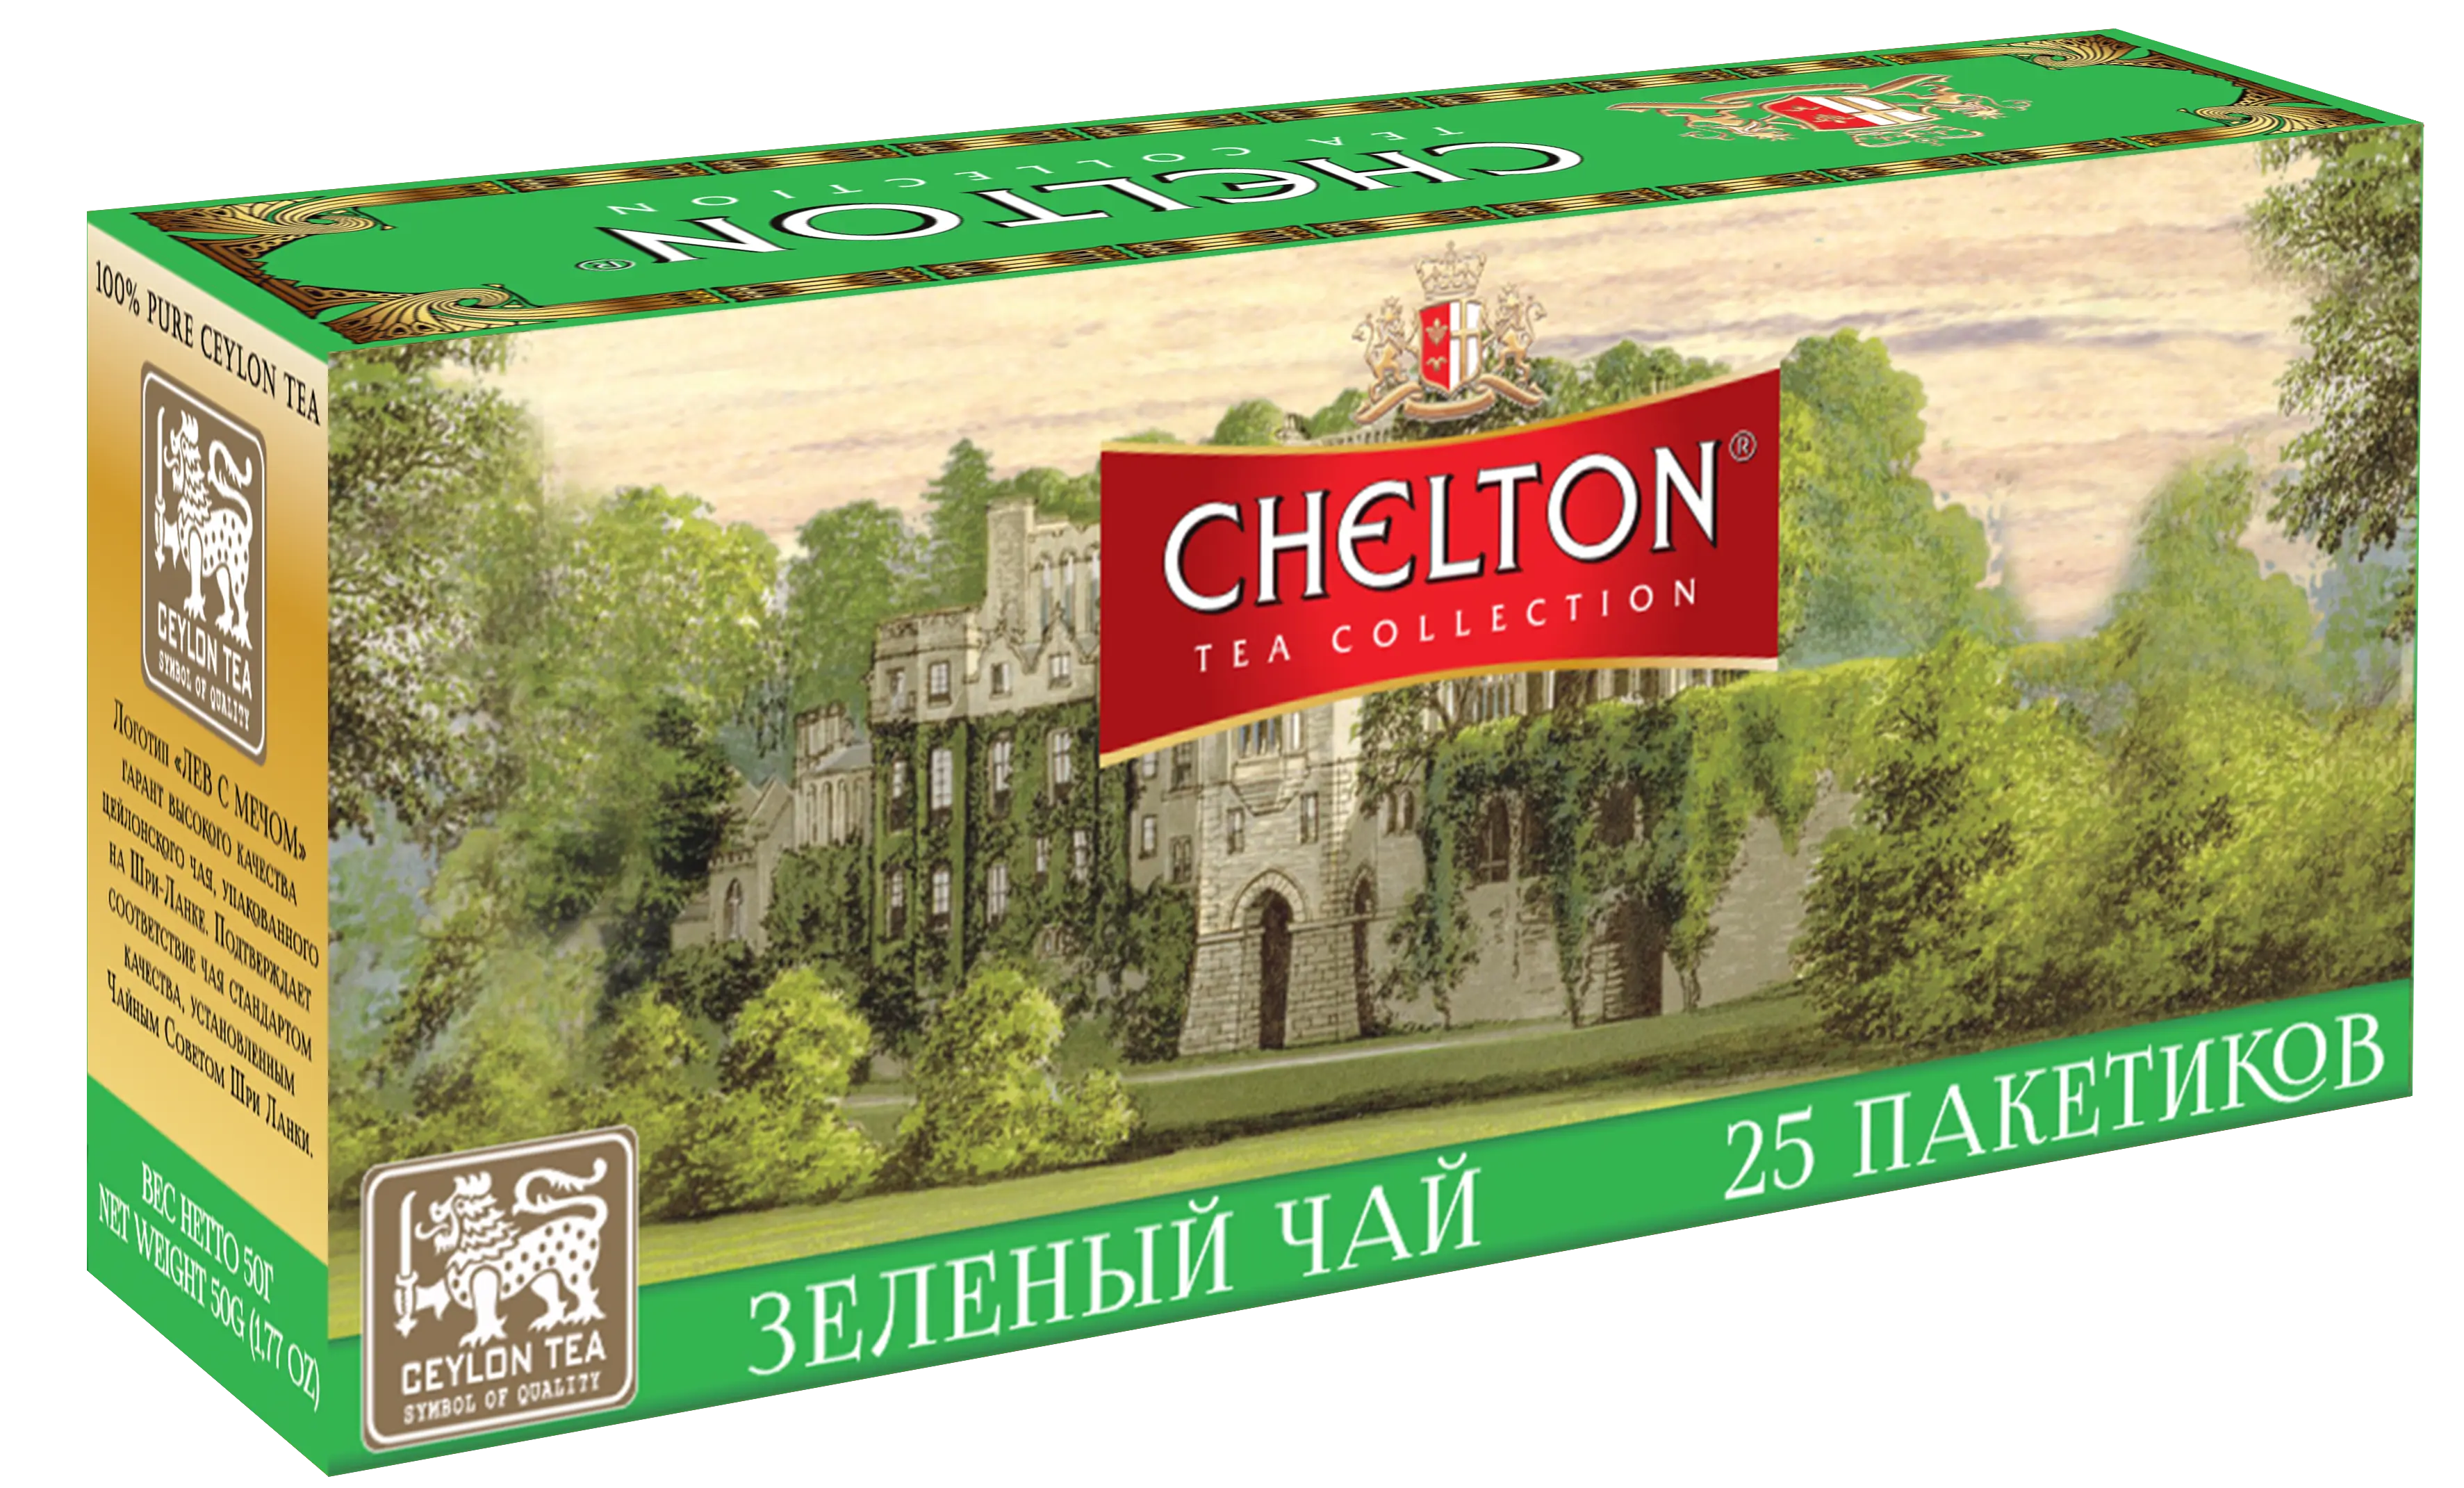 Chelton ex.25 Green